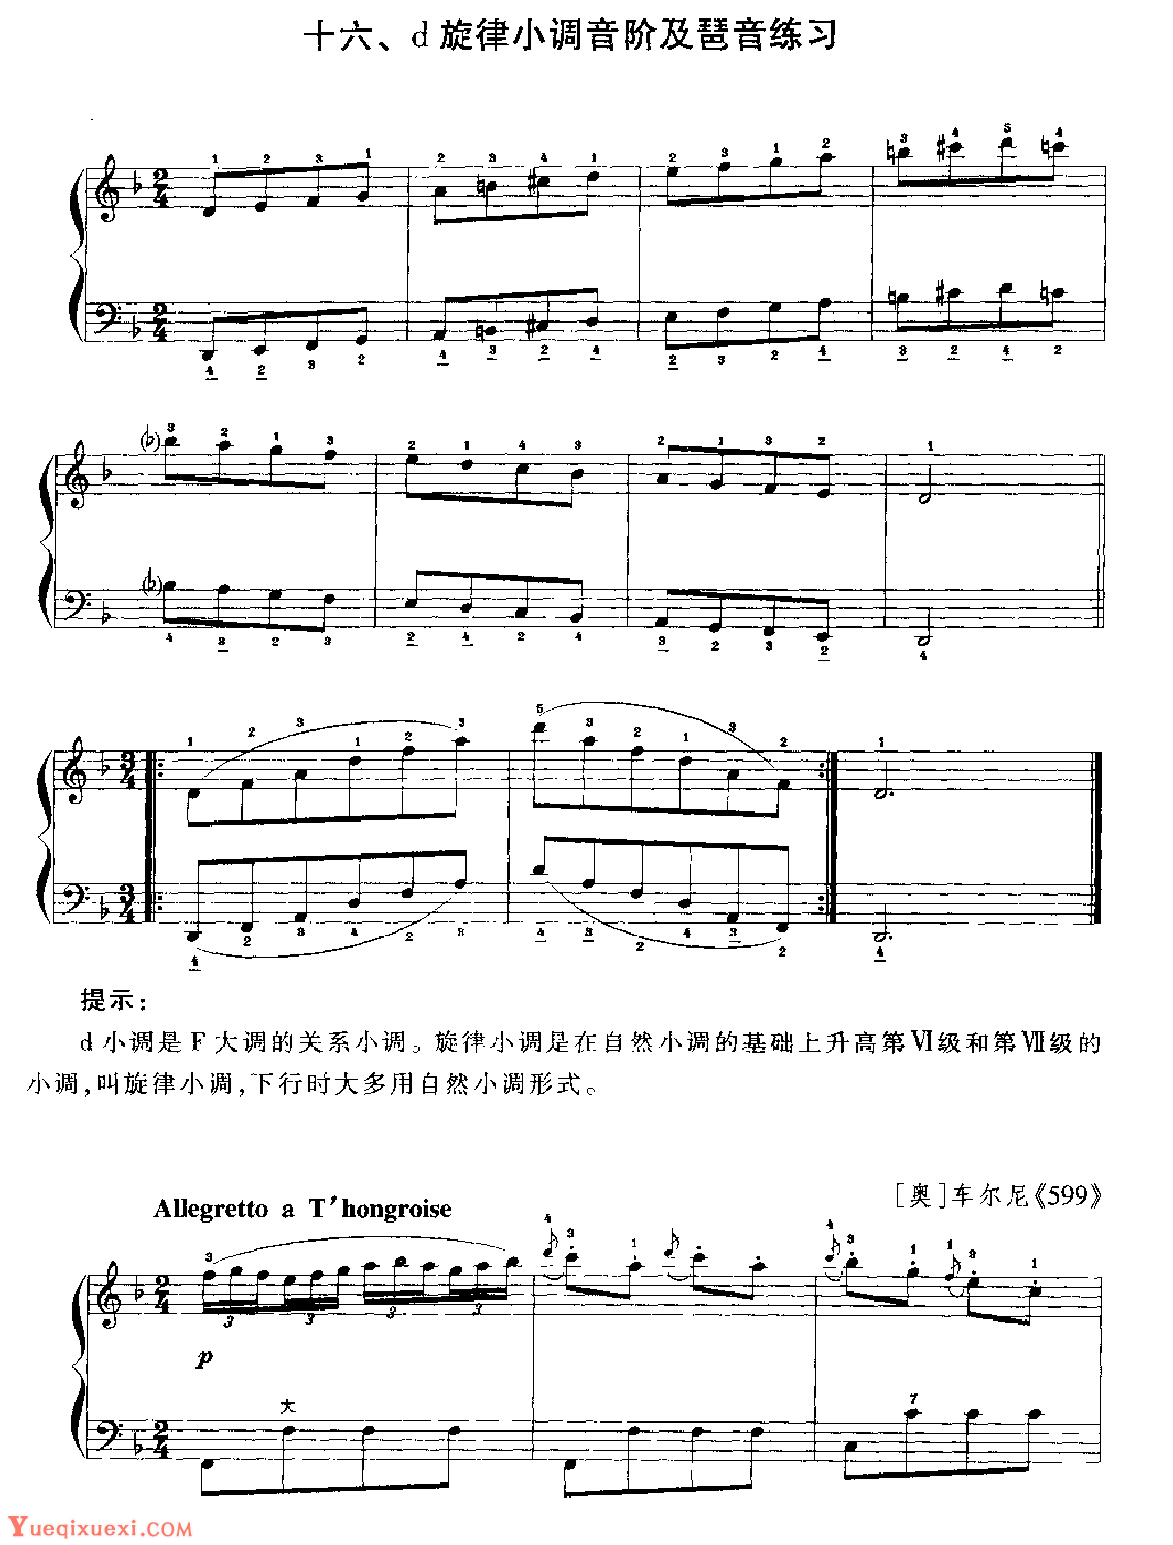 训练《手风琴d旋律小调音阶及琶音练习》